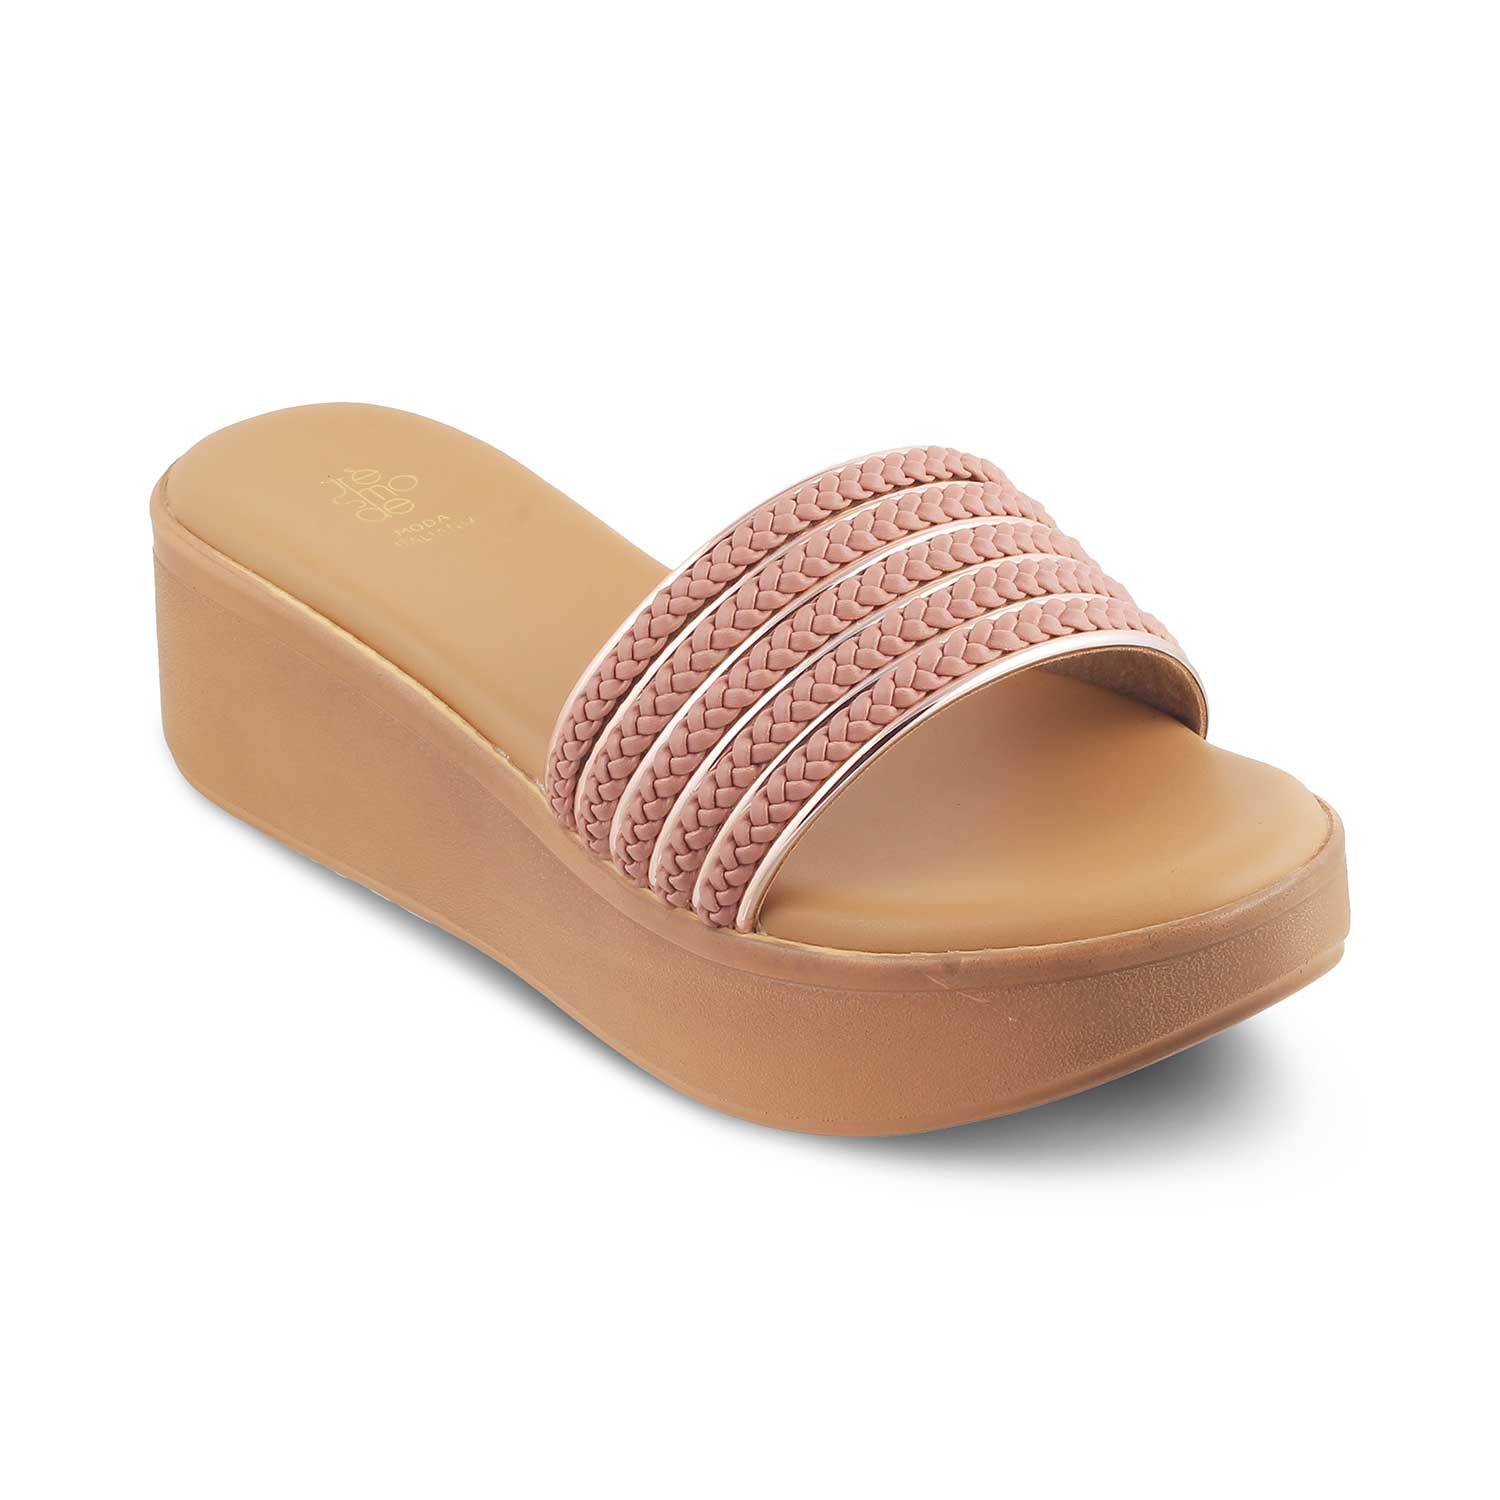 Tresmode-The Andiamo Pink Women's Platform Wedge Sandals Tresmode-Tresmode